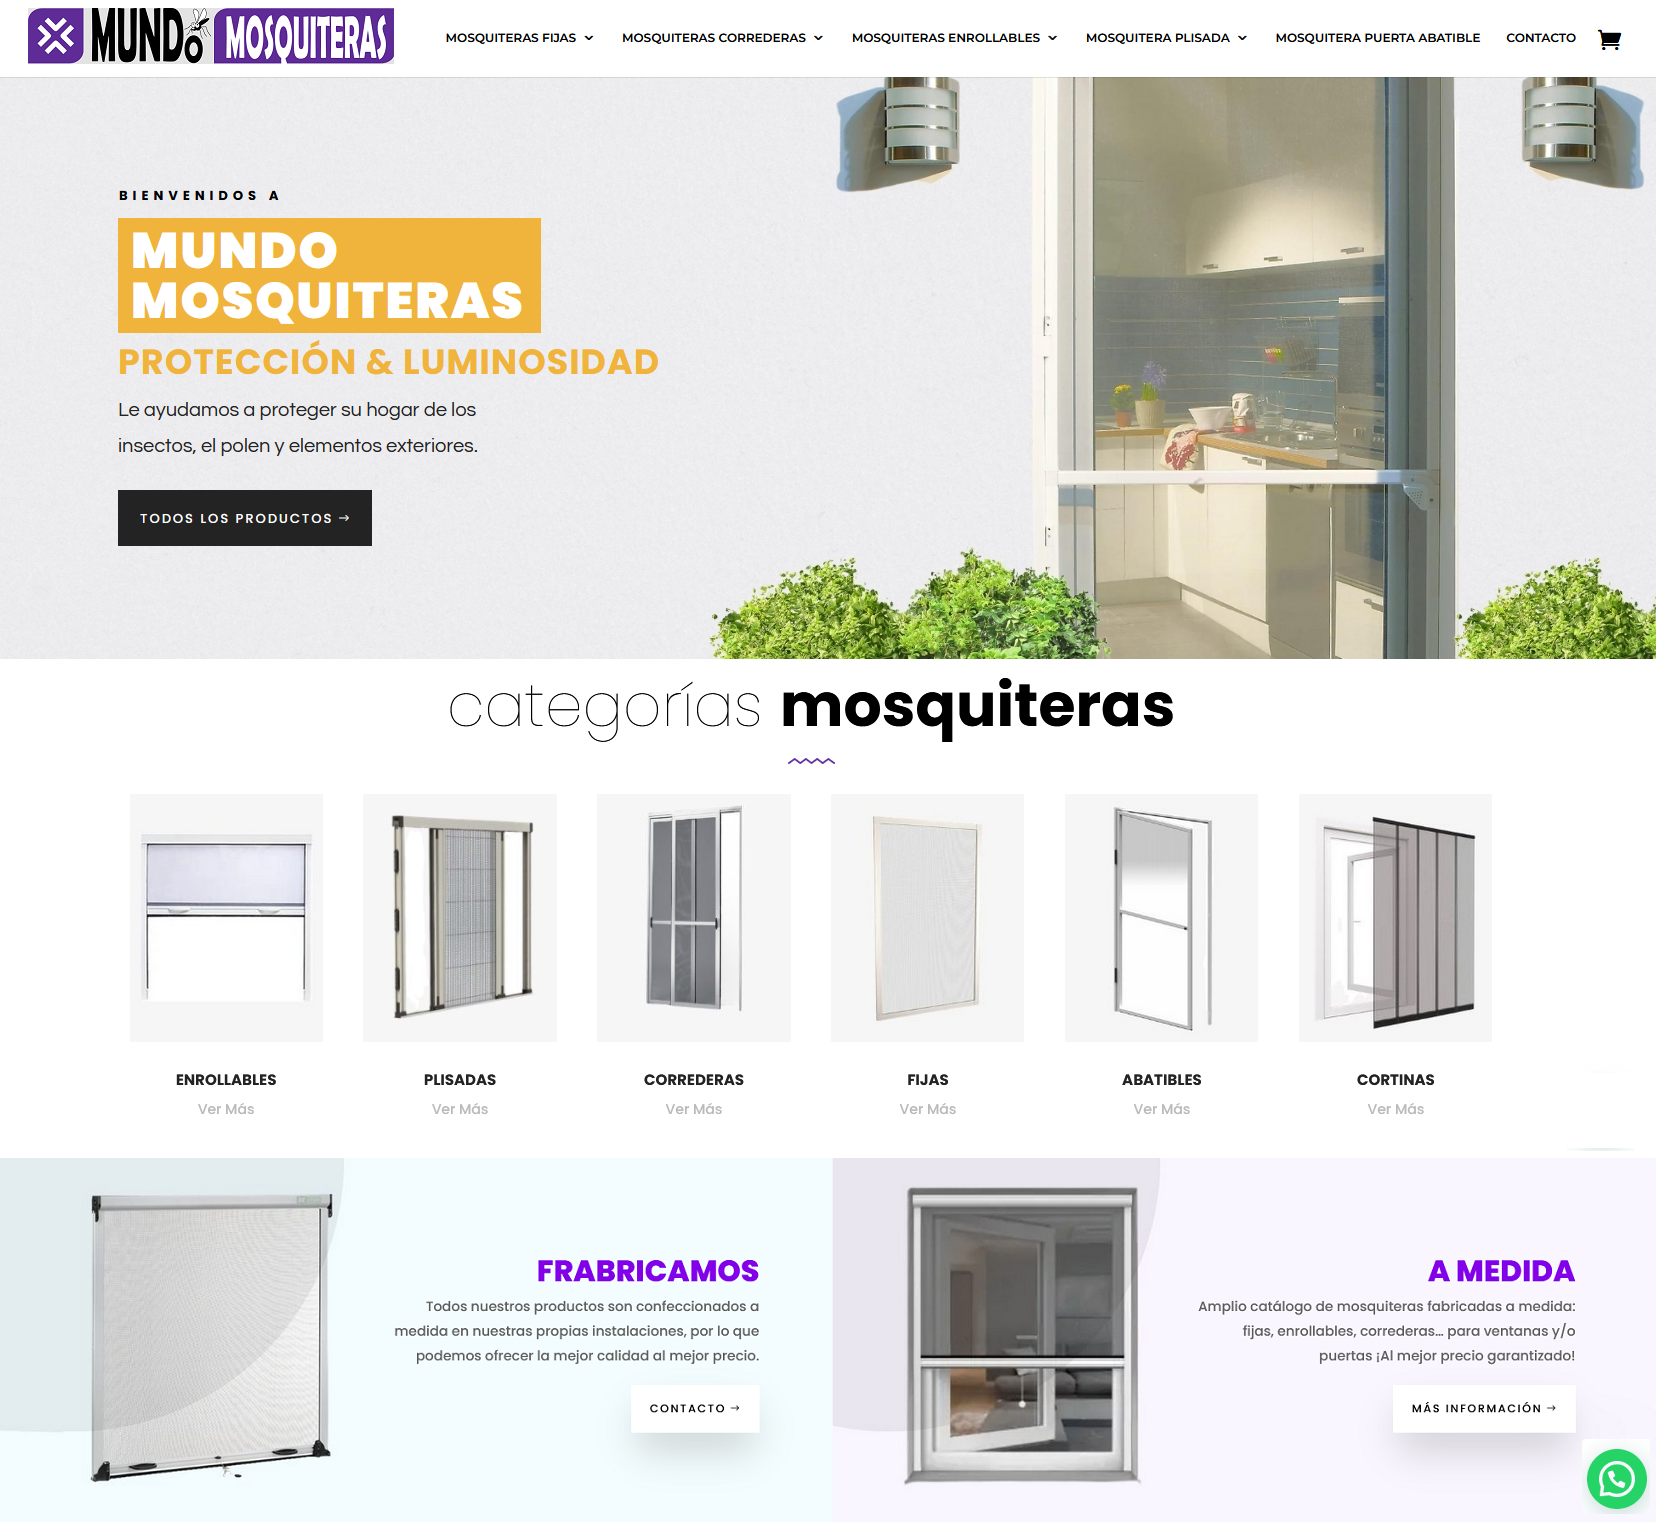 Protege tu hogar con MundoMosquiteras.com: Soluciones a medida contra insectos